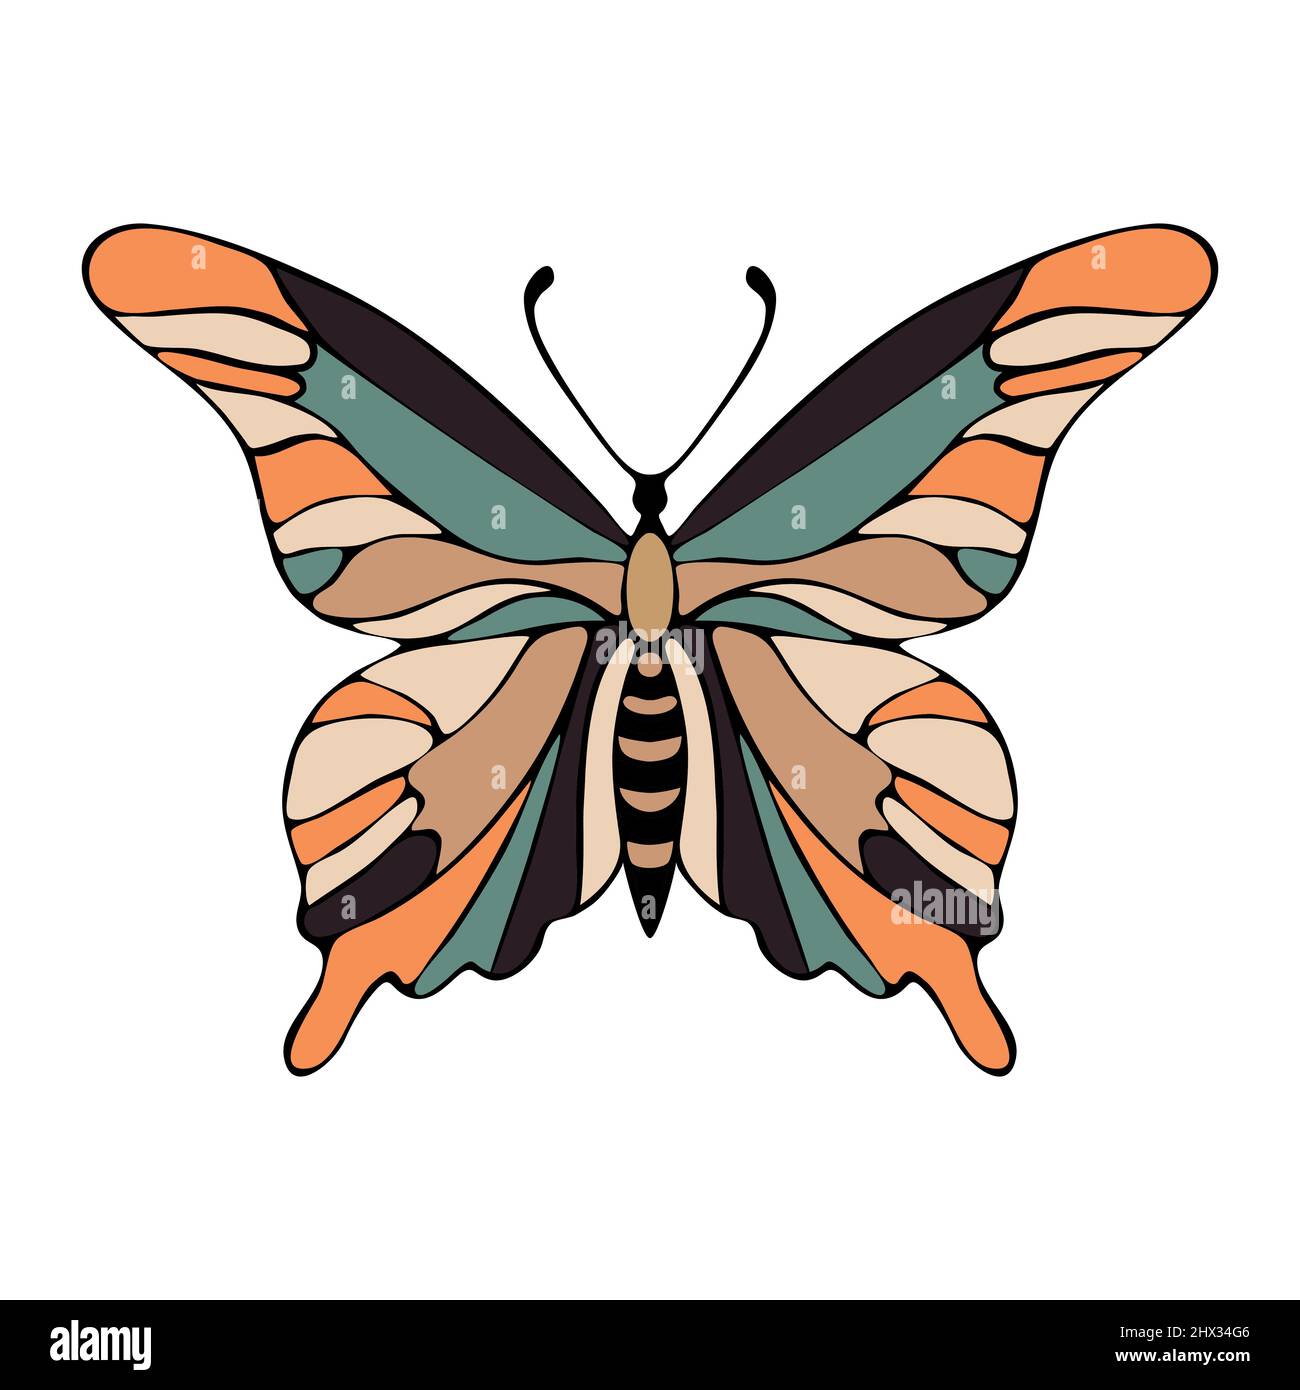 Dessin à la main de contour de papillon peint de couleur, isolé, blanc. Illustration vectorielle Illustration de Vecteur